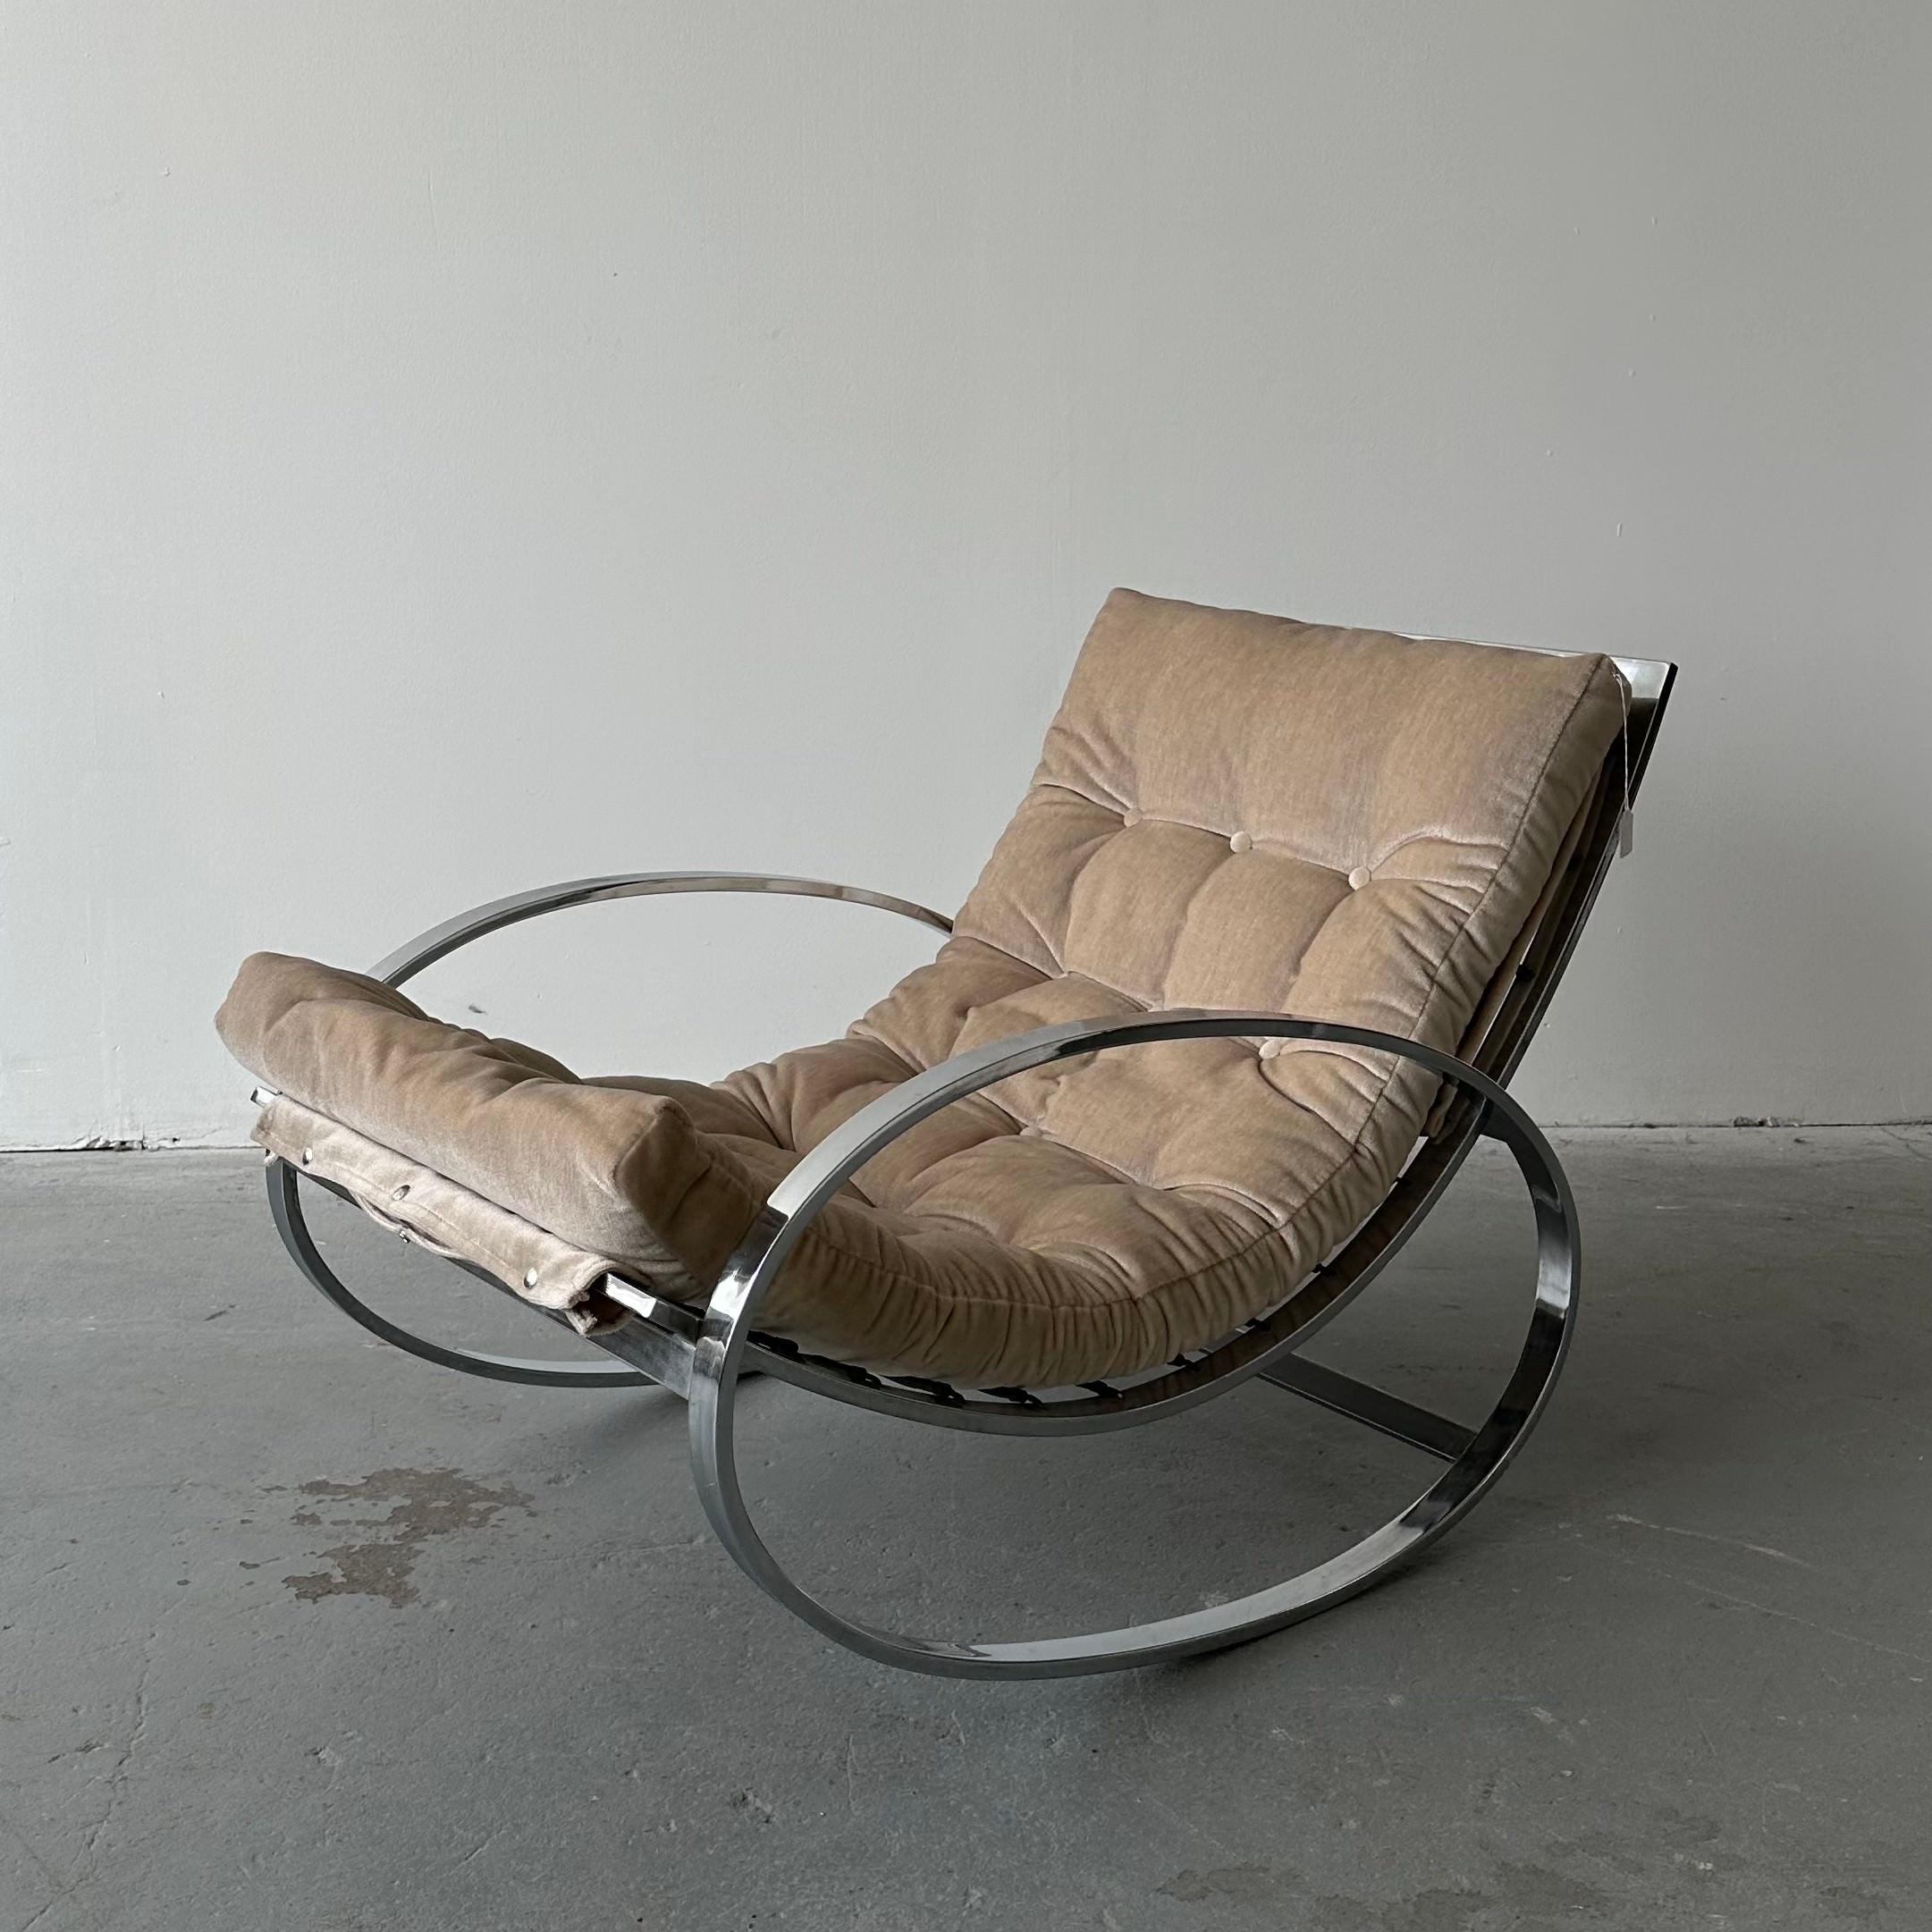 American Renato Zevi “Ellipse” Chair